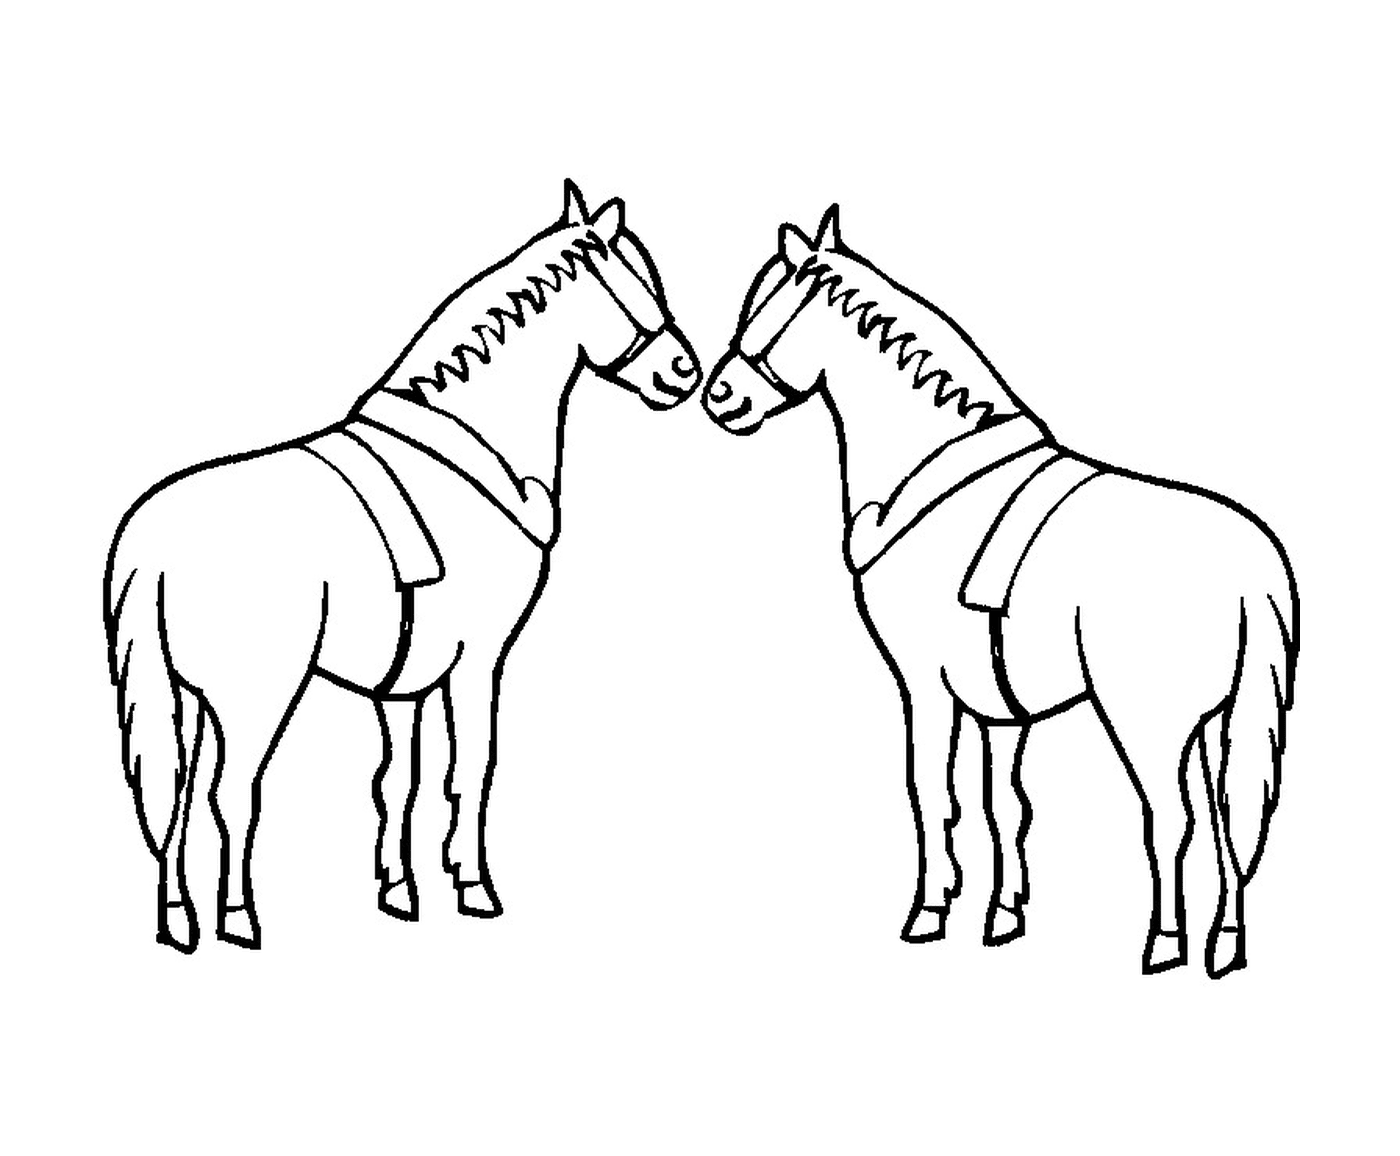  زوجان من الخيول يقفان في العشب 